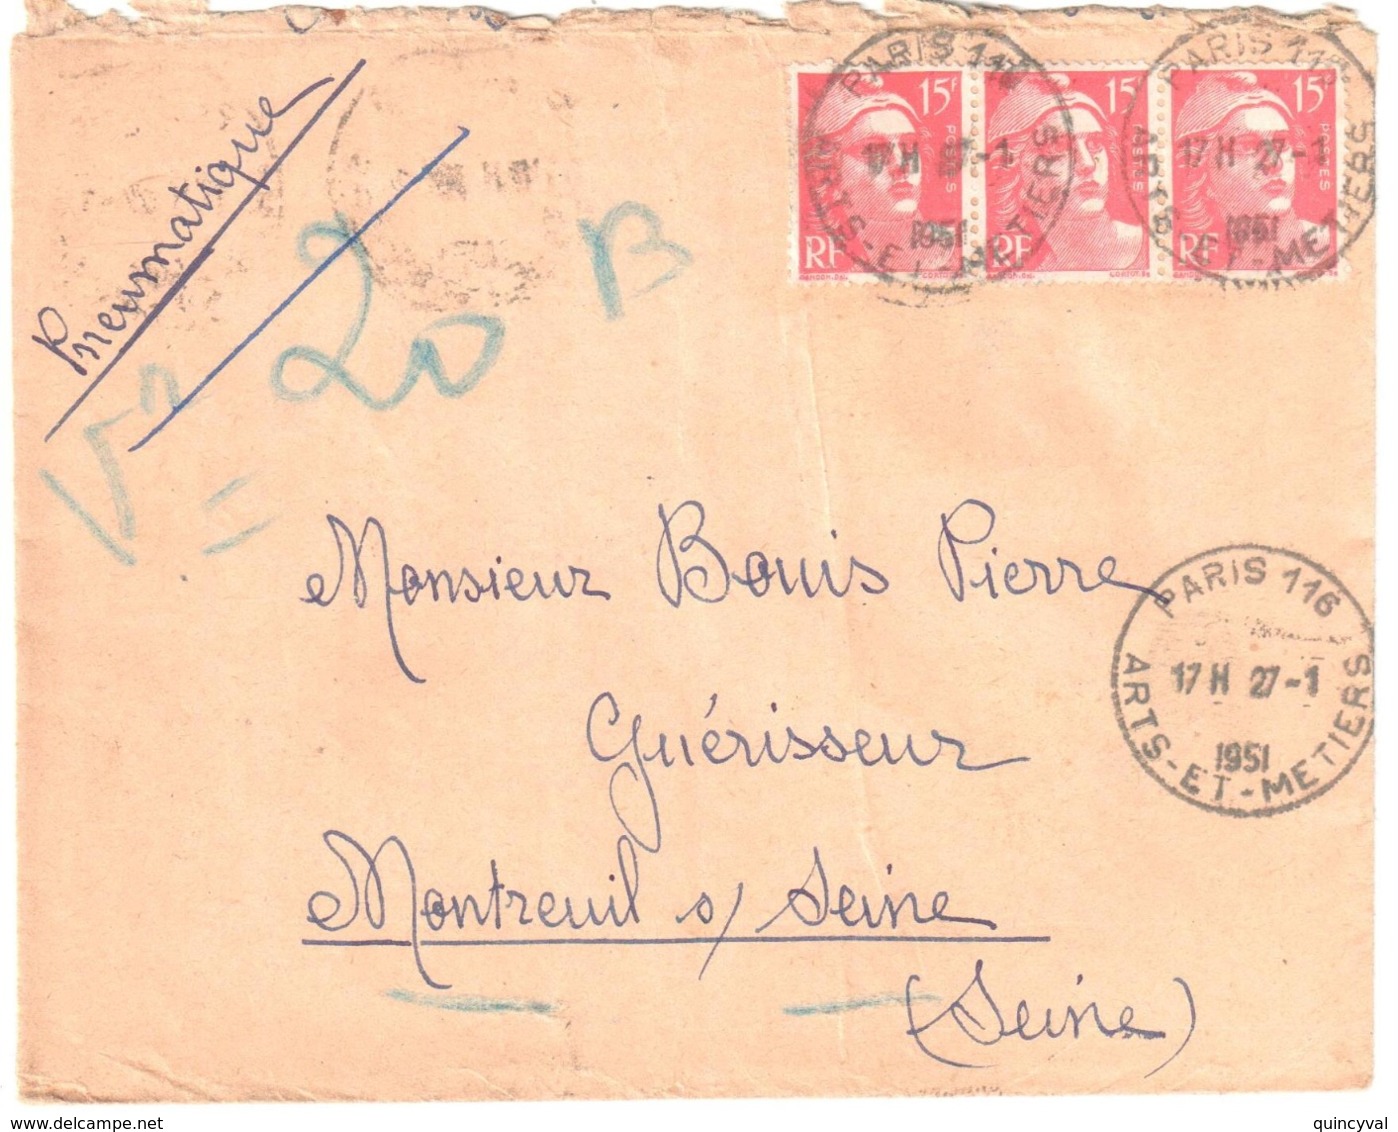 PARIS 116 Arts-et-Métiers 15 F Gandon Rouge Yv 813 Ob 27 1 1955 Dest Montreuil Sous Bois - Lettres & Documents